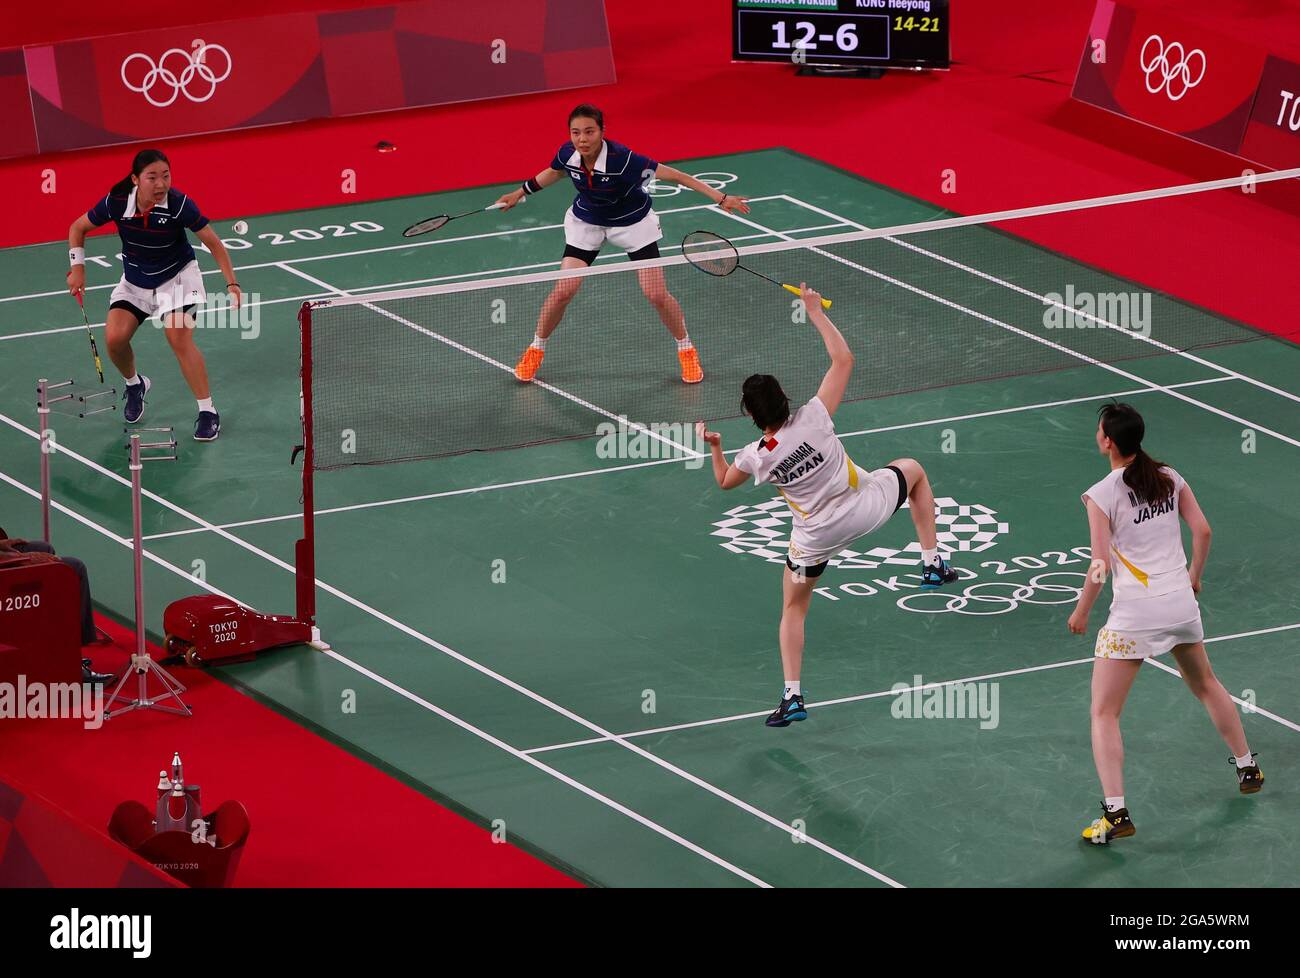 Olimpiadas de Tokio 2020 - Badminton - Dobles de mujeres - cuartos de final  - MFS - Musashino Forest Sport Plaza, Tokio, Japón – 29 de julio de 2021.  Wakana Nagahara de